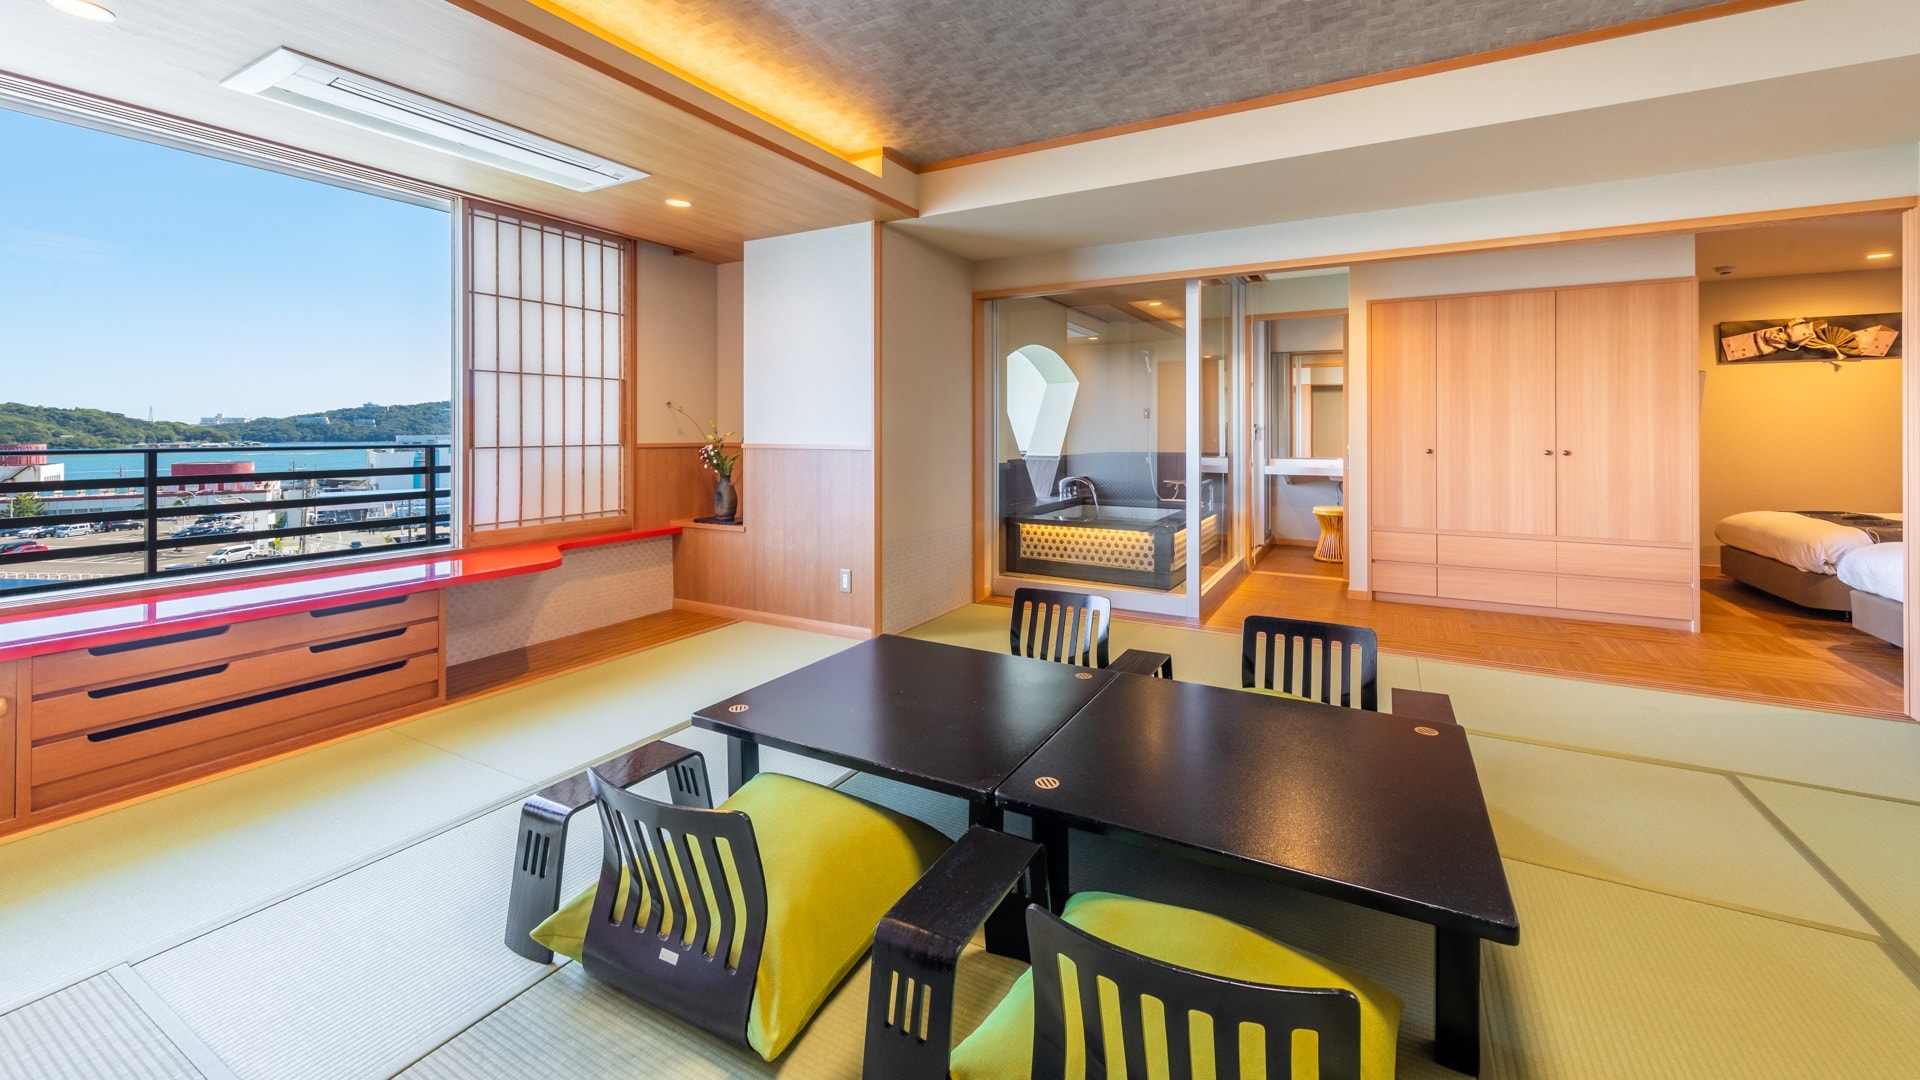 Kamar Deluxe Jepang dan Barat "Gedung Selatan" dengan bak mandi terbuka (contoh) * Denah lantai dan lanskap bervariasi tergantung pada ruangan.